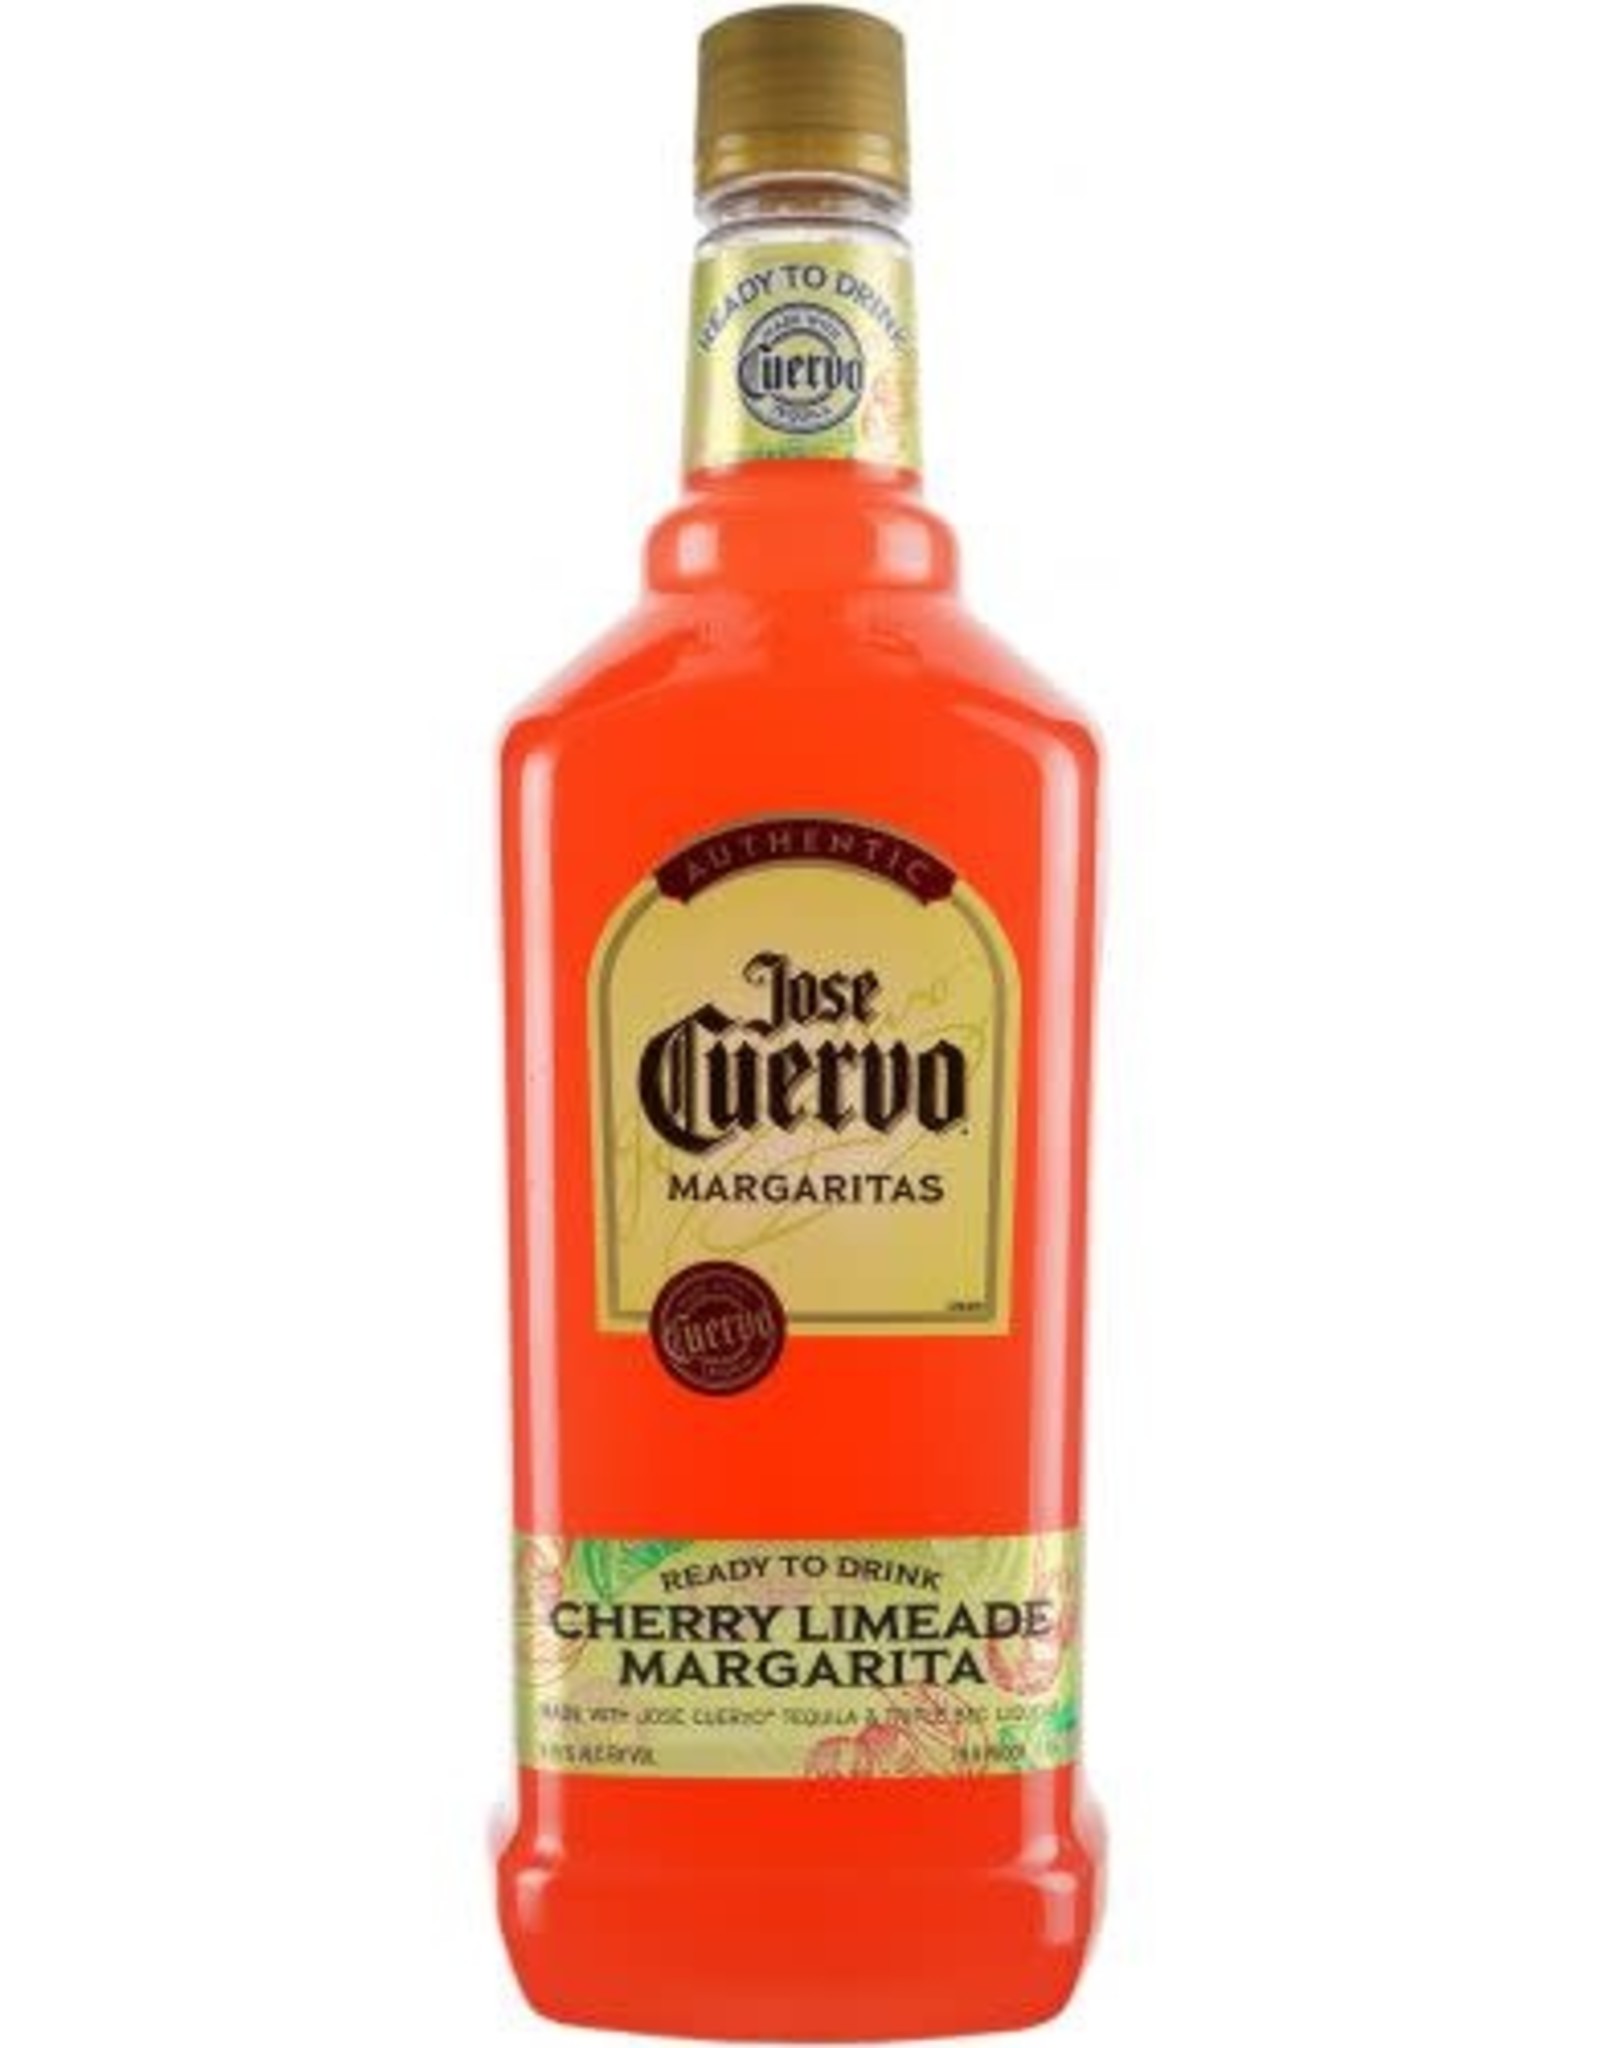 Jose Cuervo Jose Cuervo Cherry Limeade Margarita 1.75L